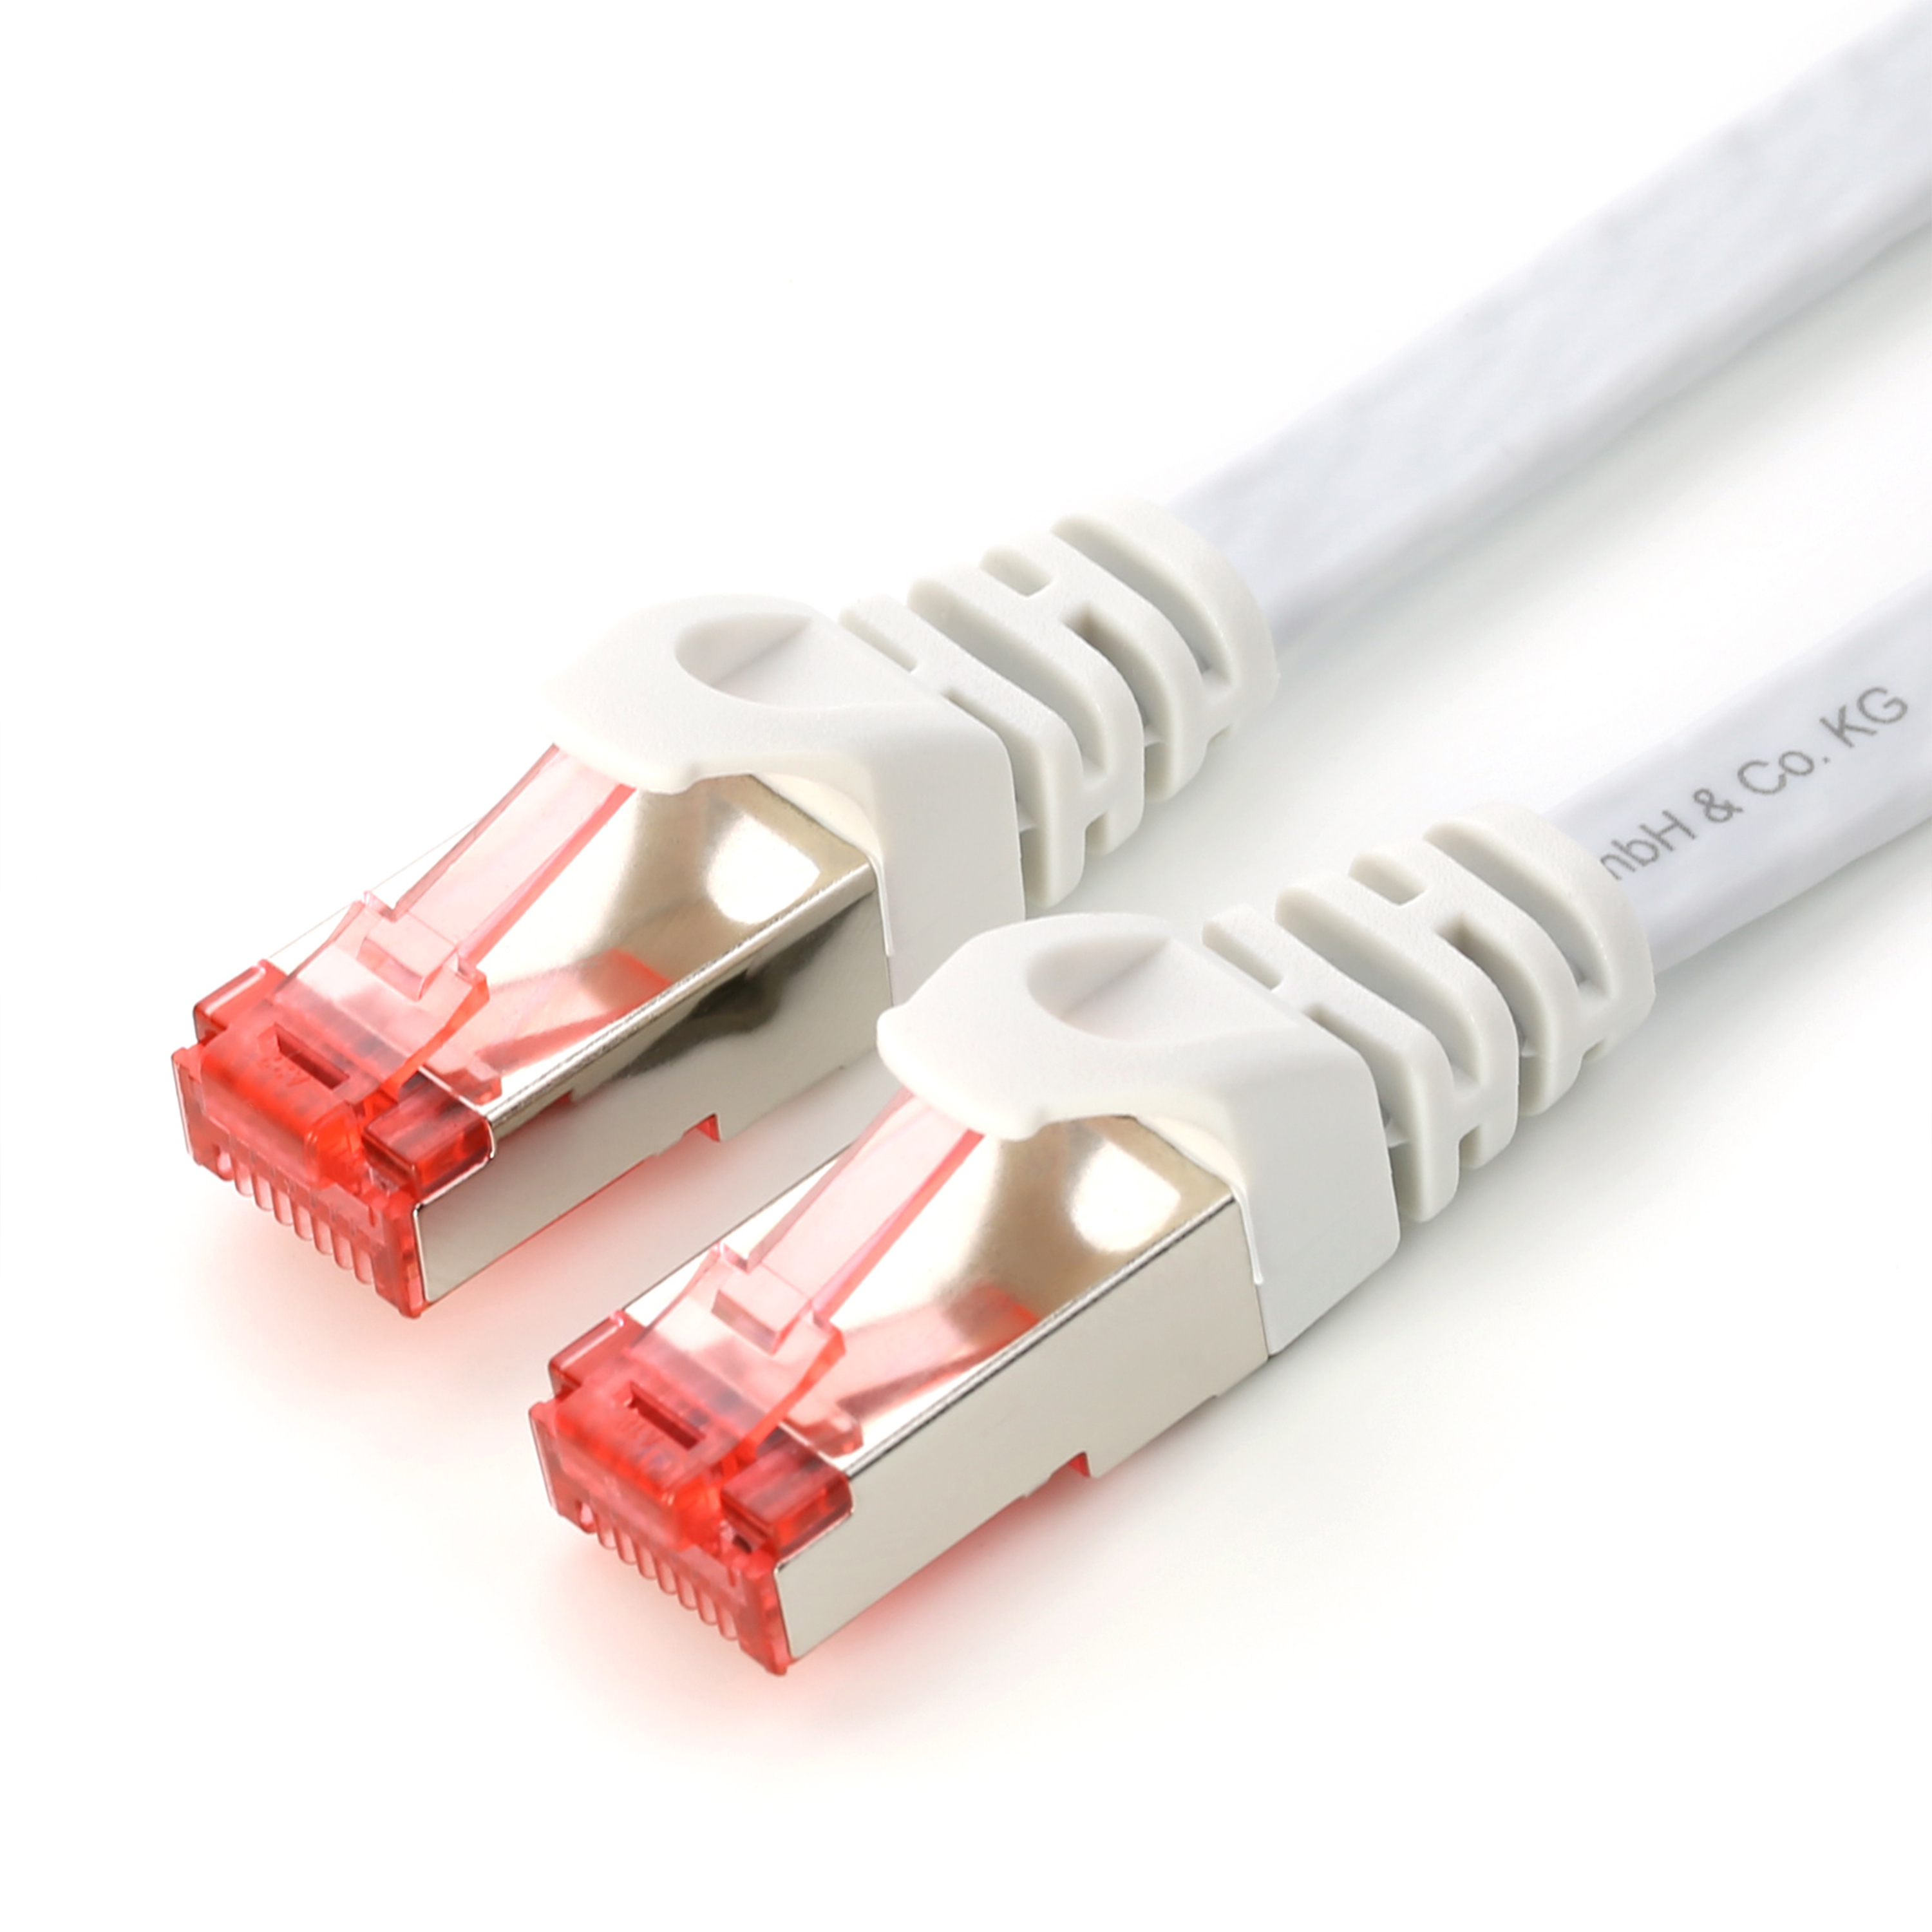 CSL 0,25m Kabel, LAN weiß weiß FTP Stecker, Flachband Patchkabel Cat7 weiß-roter